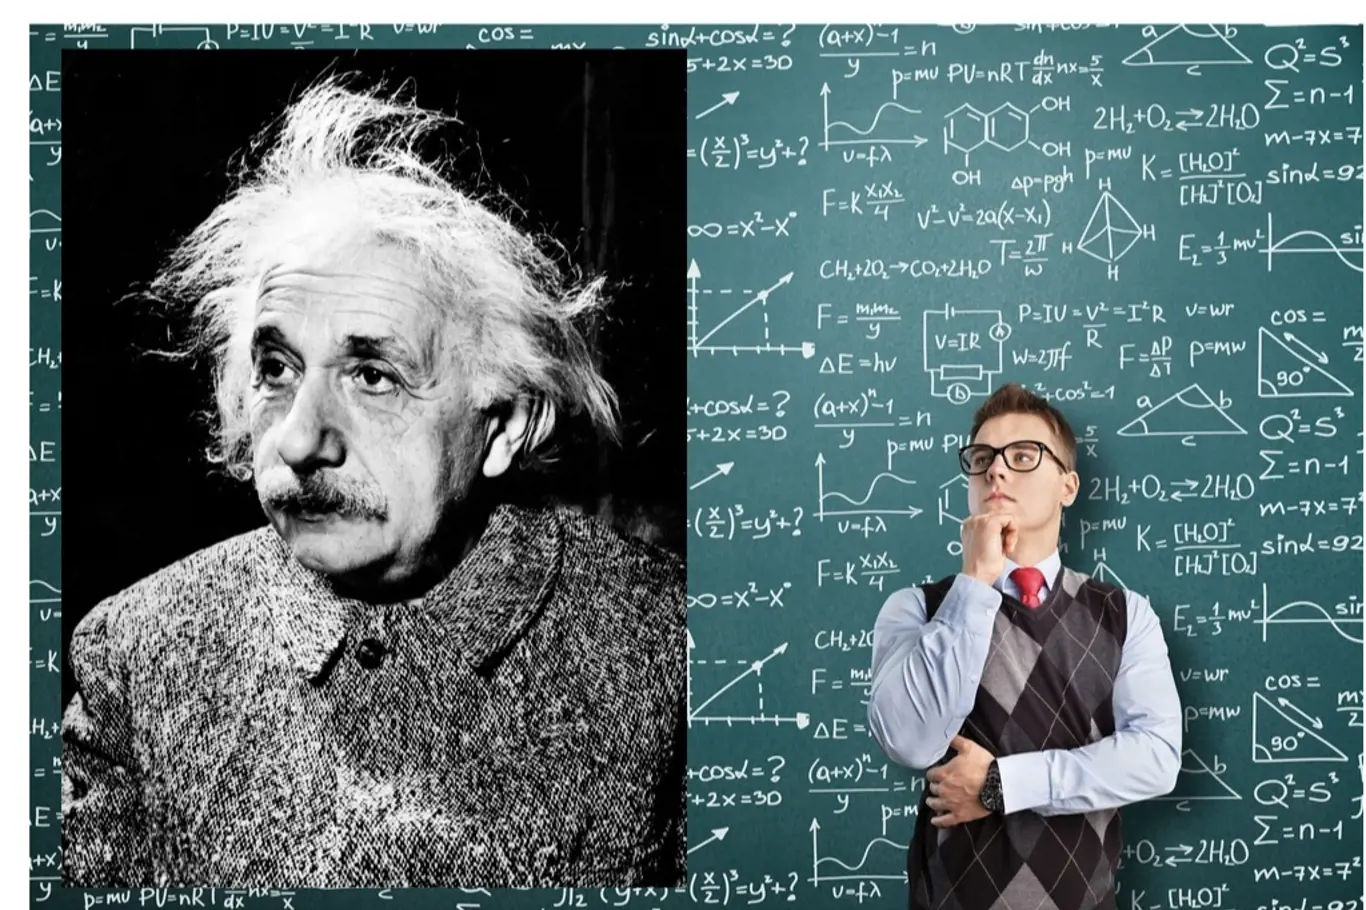 Samozřejmě, že Einstein byl znám především pro své geniální vynálezy. Ale ani jeho vlasy nezůstaly bez povšimnutí.